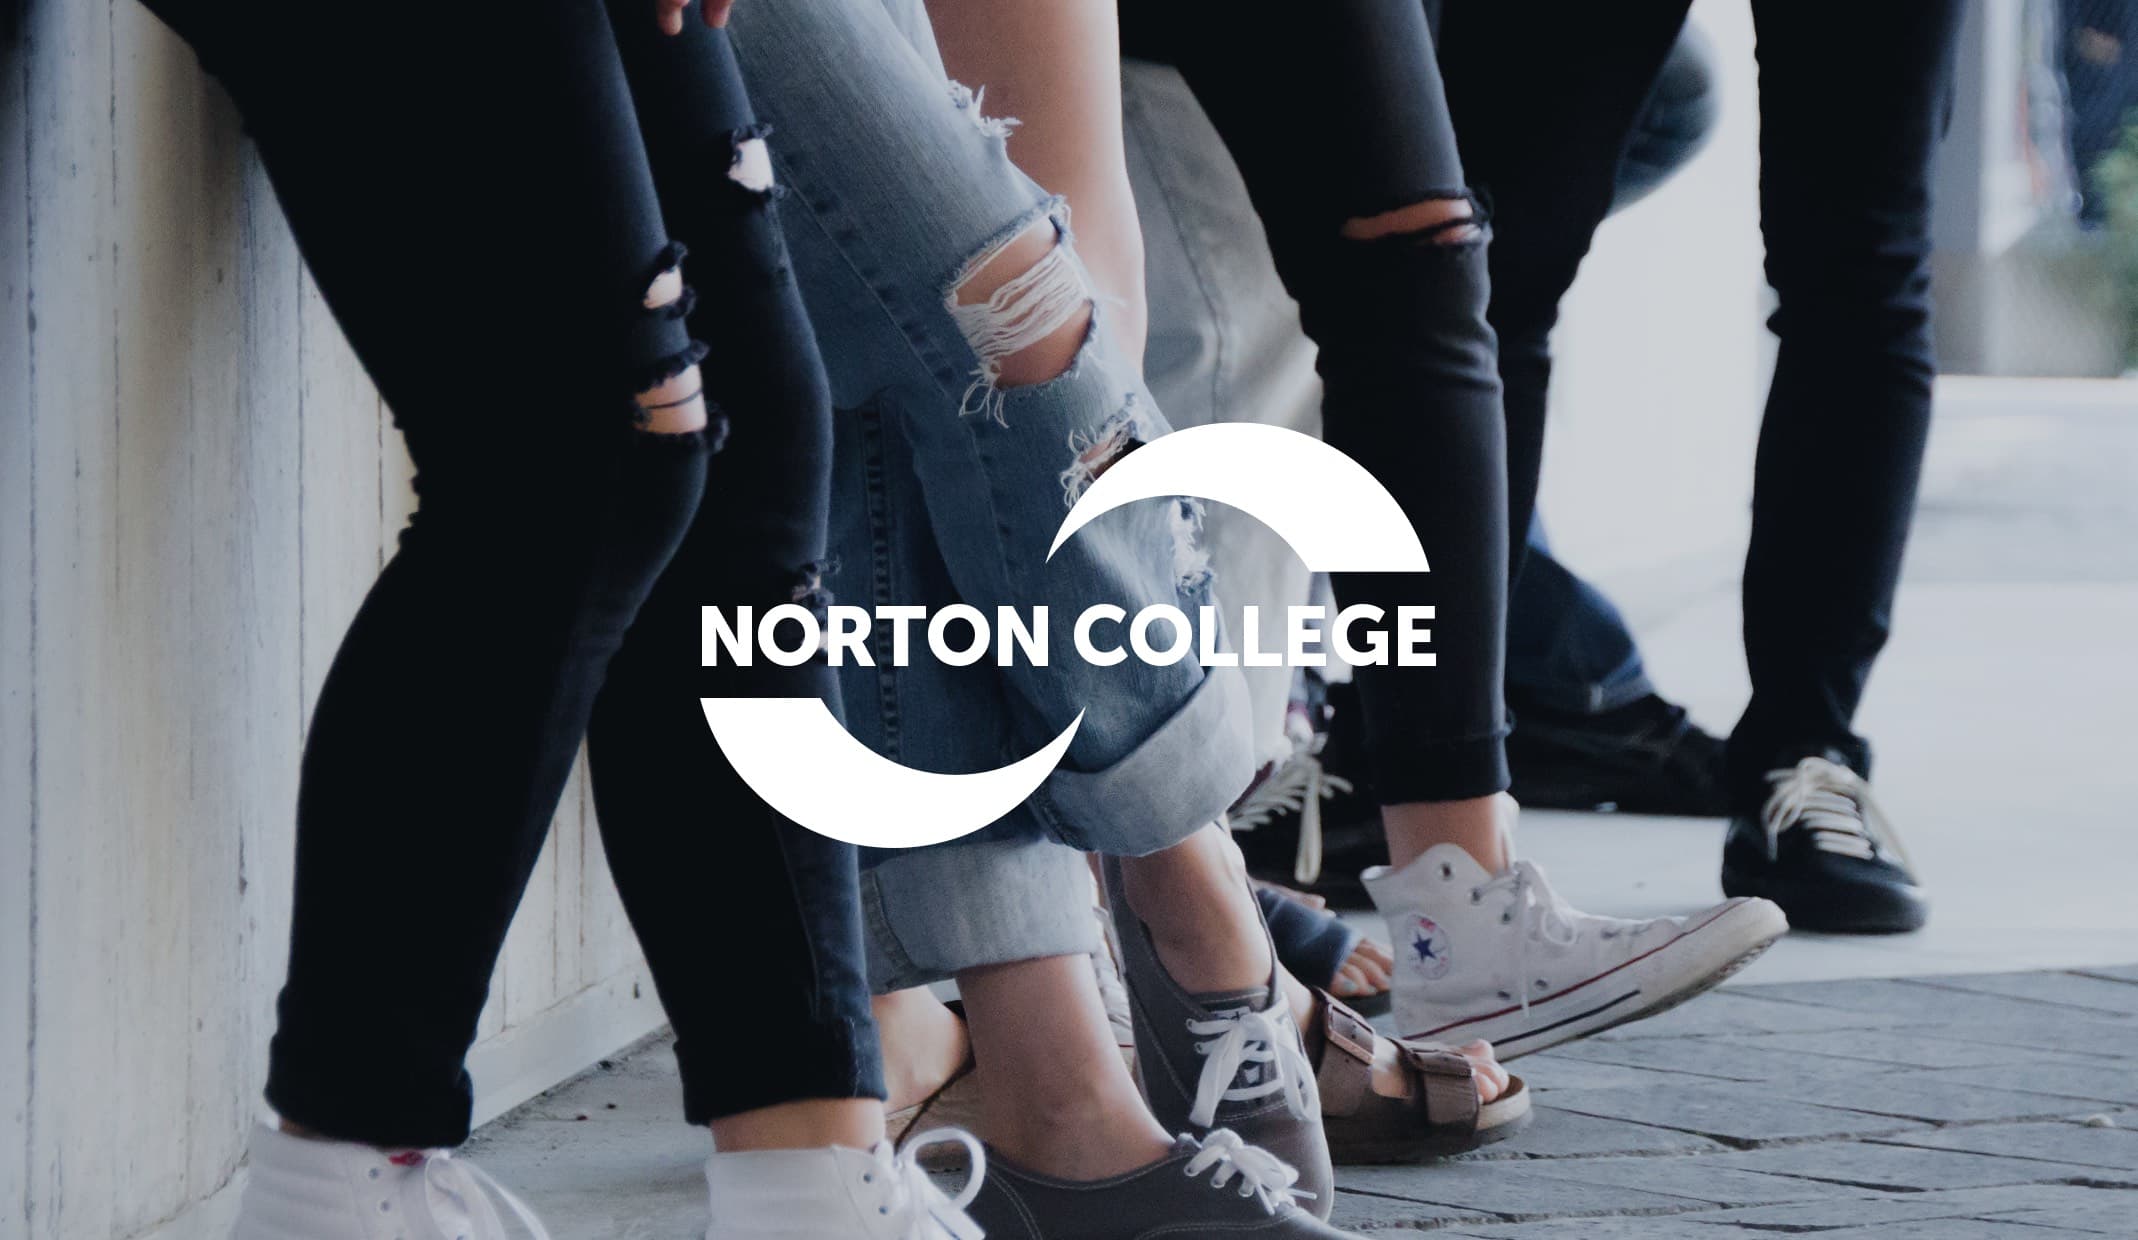 Norton College